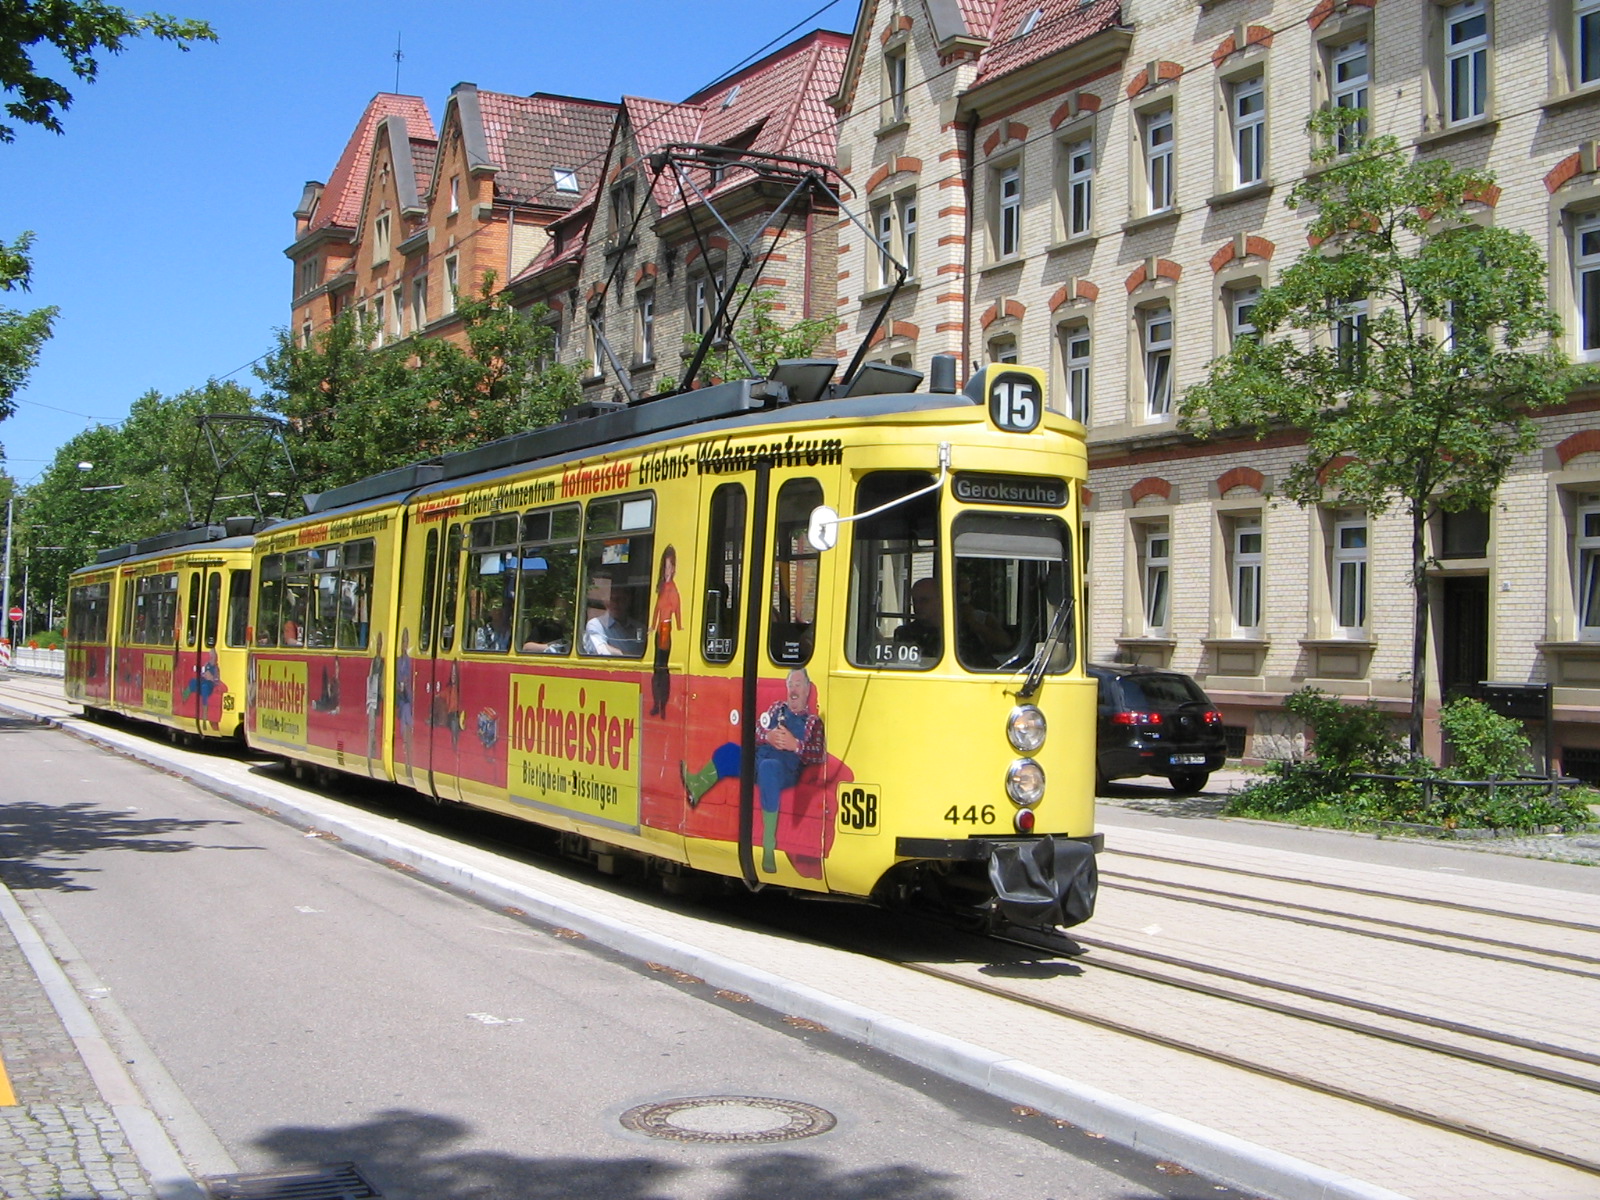 17.06.2007 - Historischer GT4-Triebwagen 445 der Stuttgarter Straßenbahnen in der Nordbahnhofstraße in Stuttgart